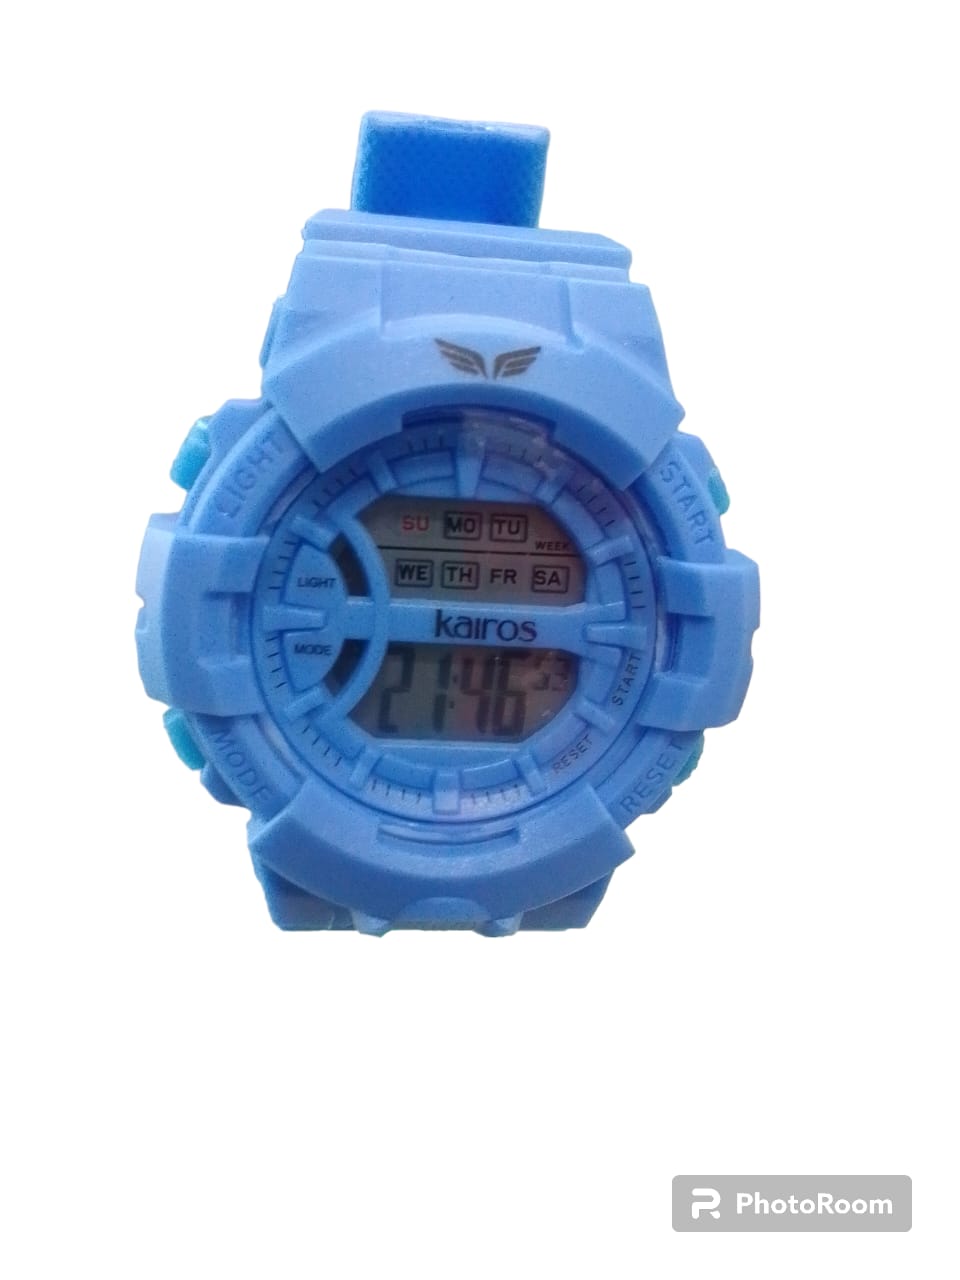 Reloj Kairos Color Azul Celeste